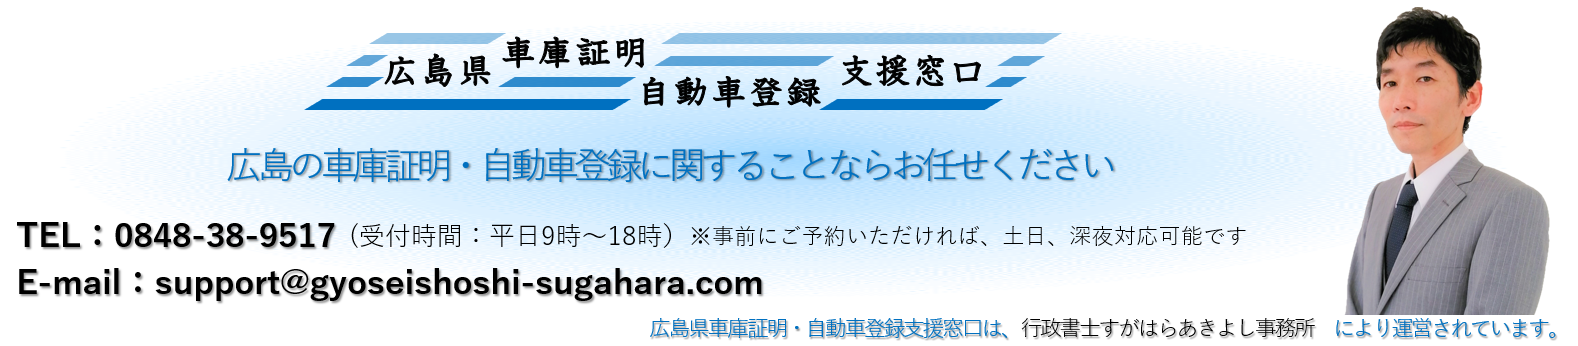 広島県 車庫証明・自動車登録申請支援窓口